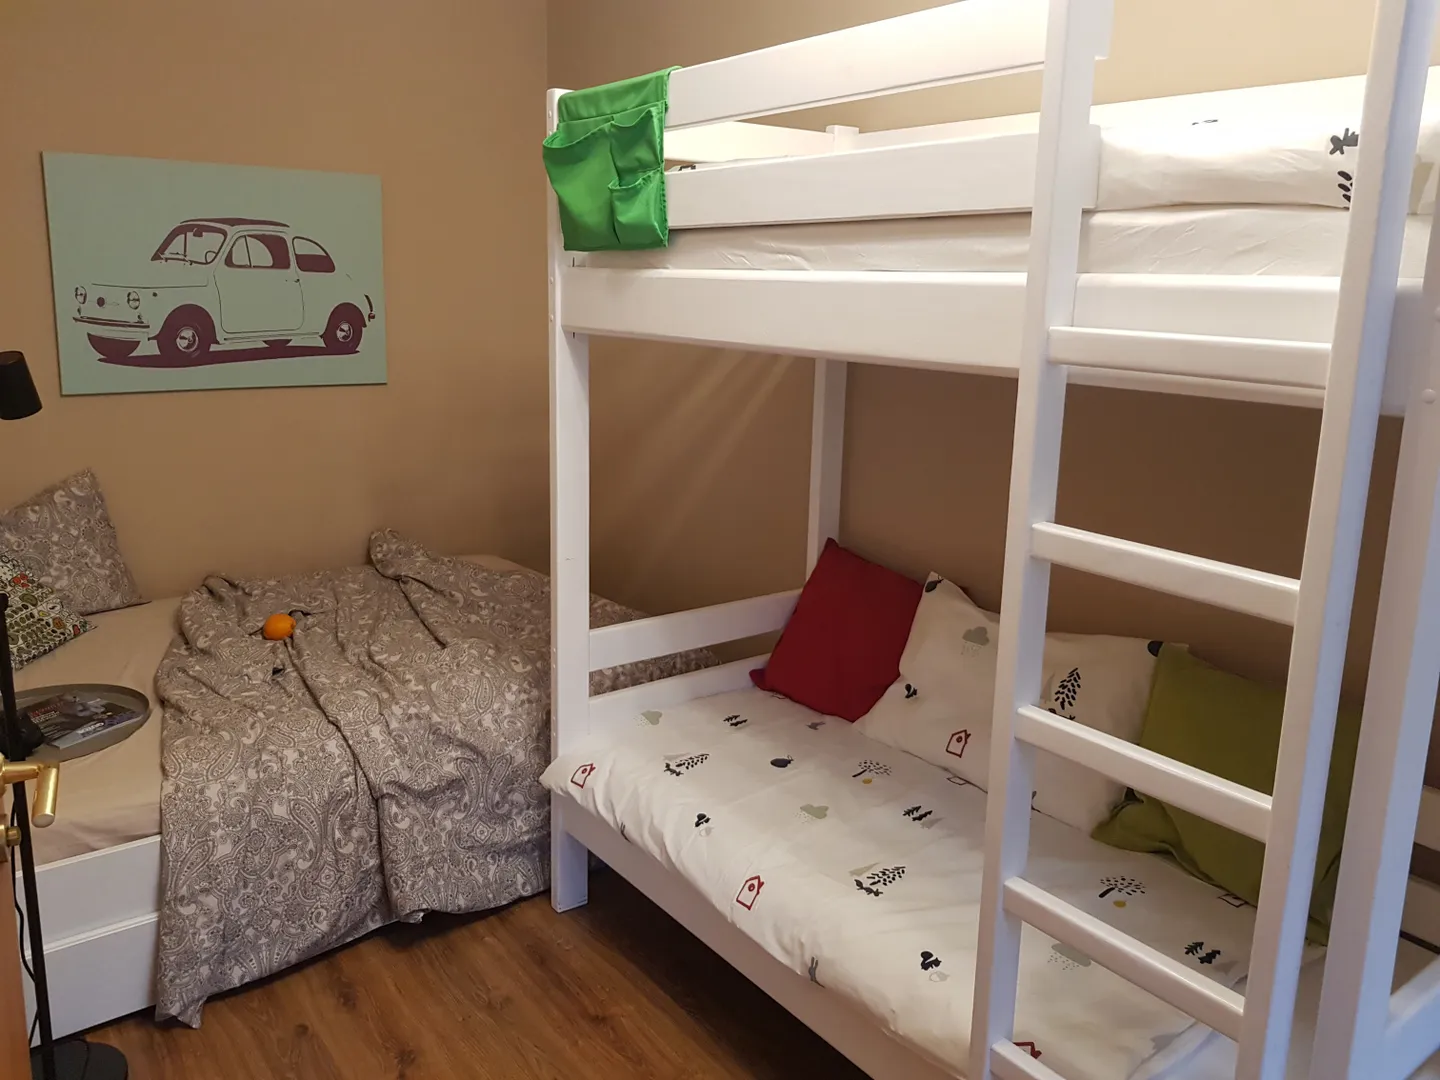 Спальня 13м2: двуспальная кровать 140х200 + детская двухъярусная кровать со спальными местами 170х80